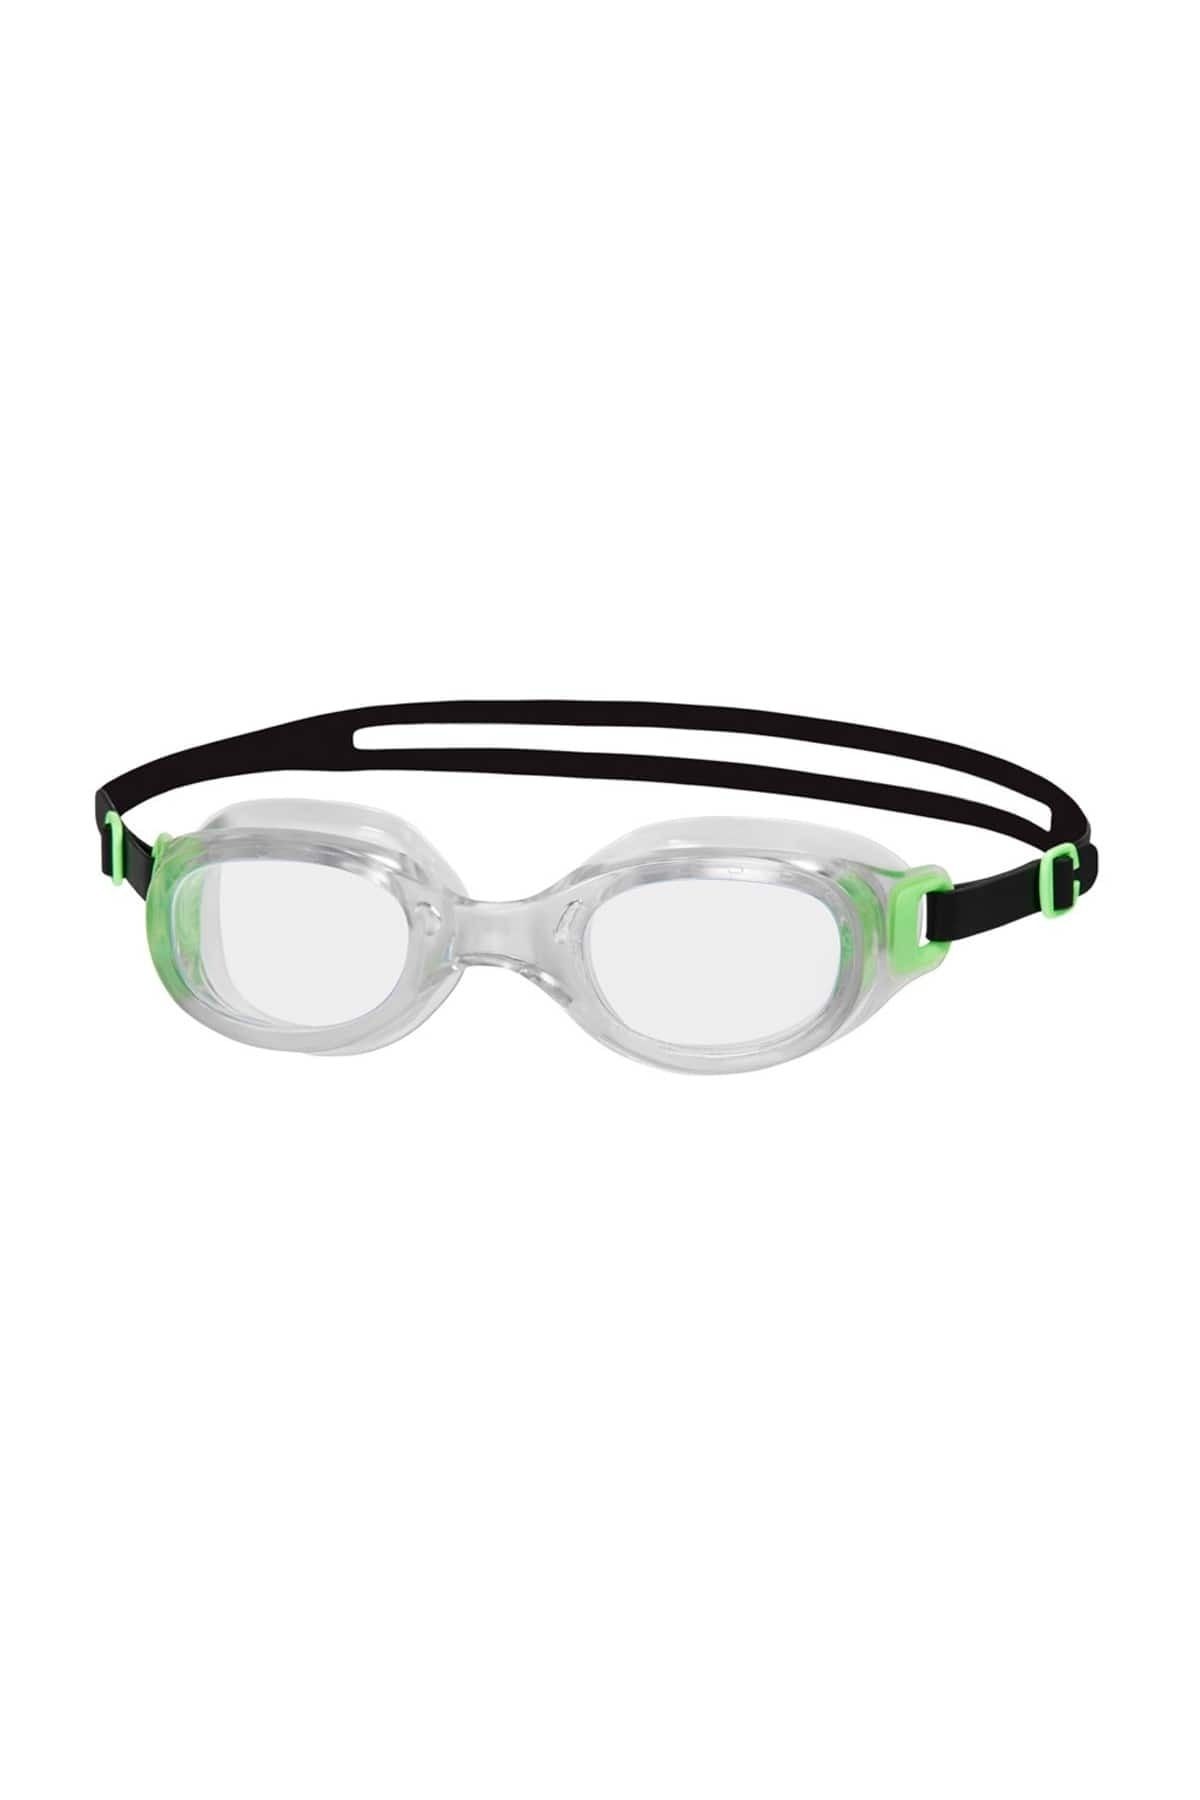 SPEEDO Futura Classic Yetişkin Yüzücü Gözlüğü - 8-10898b568